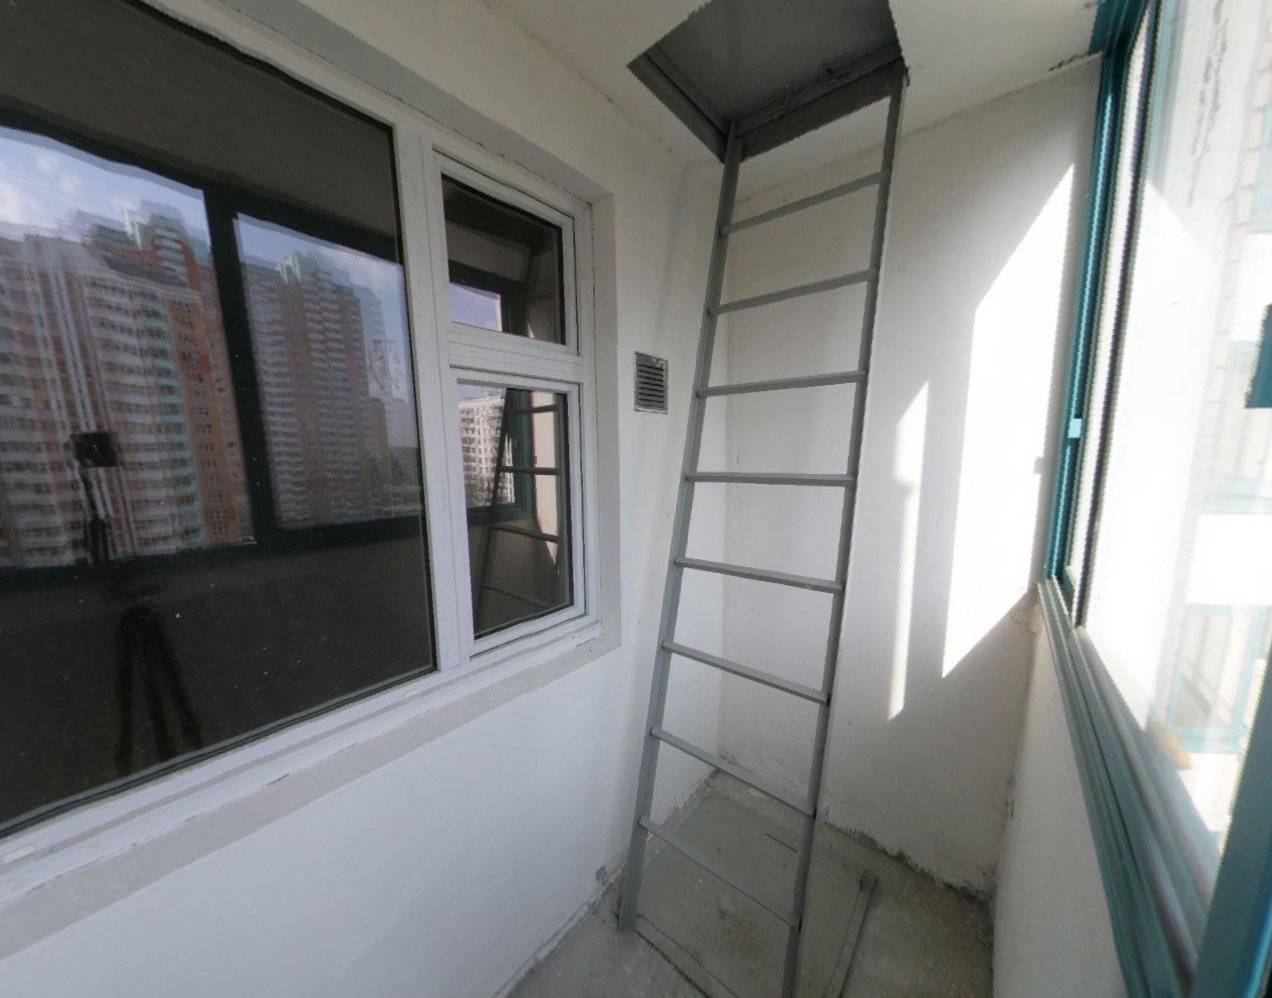 Пожарная лестница на балконе что делать: можно ли срезать, отделка лоджии, убрать, дизайн, фото, спилить, демонтаж, ограждения, видео